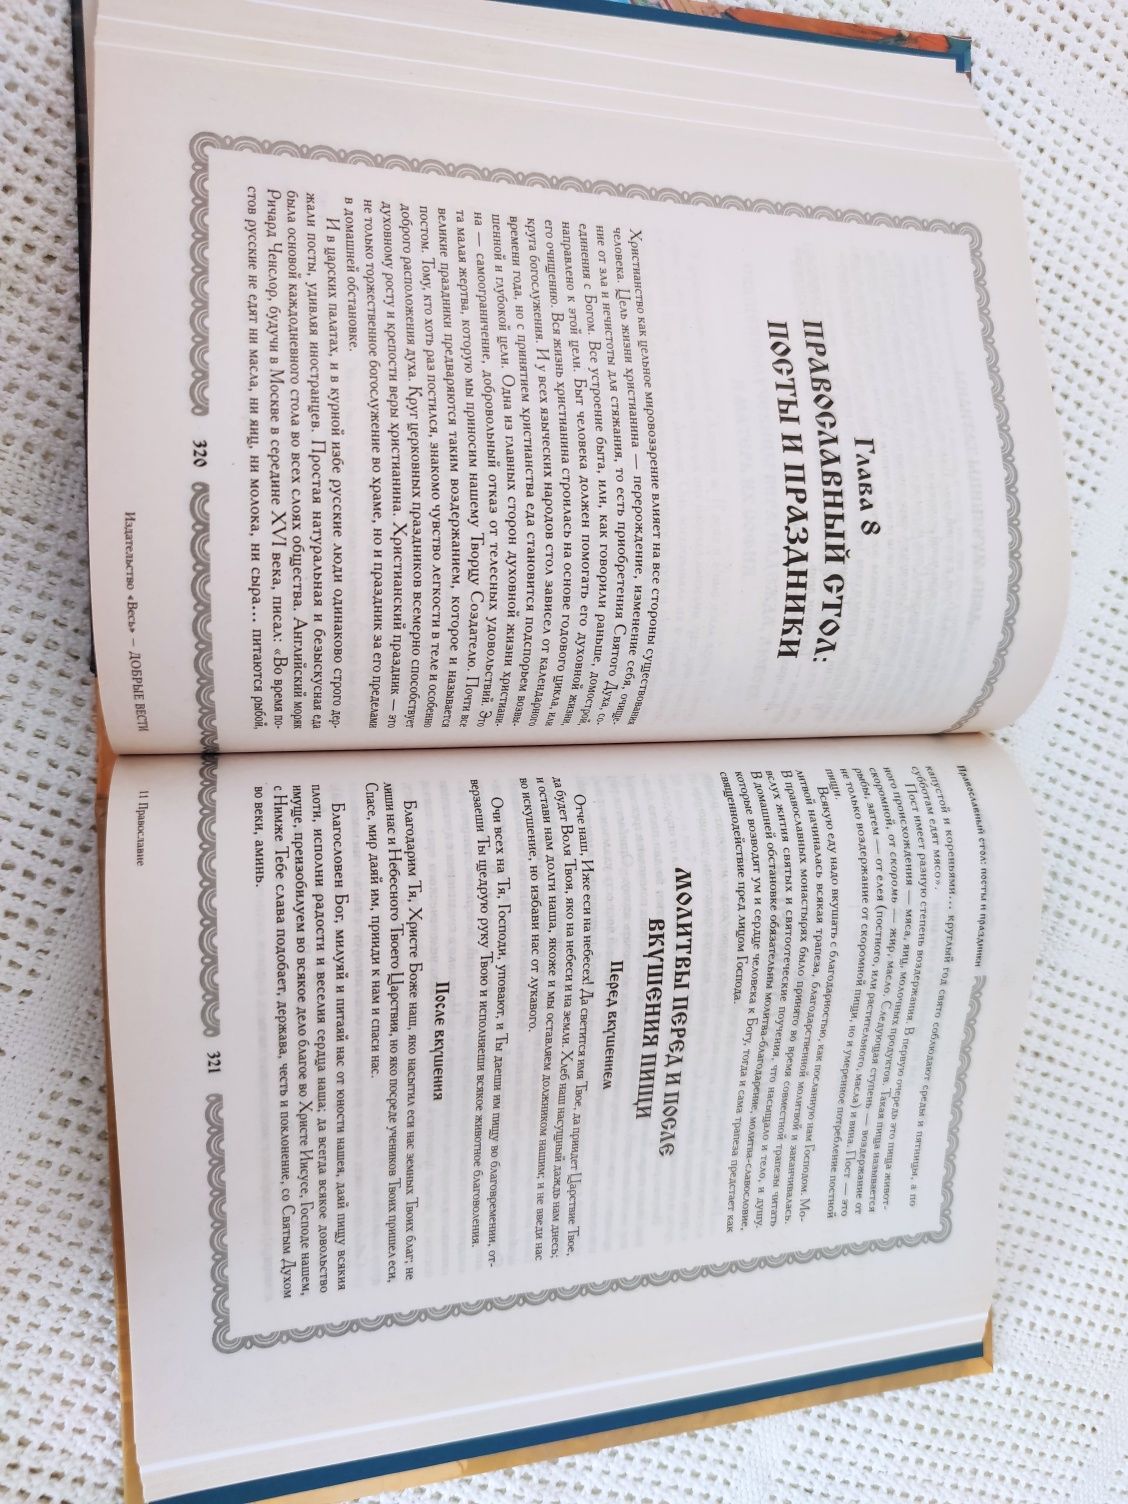 Нова книга Православие полная энциплопедия